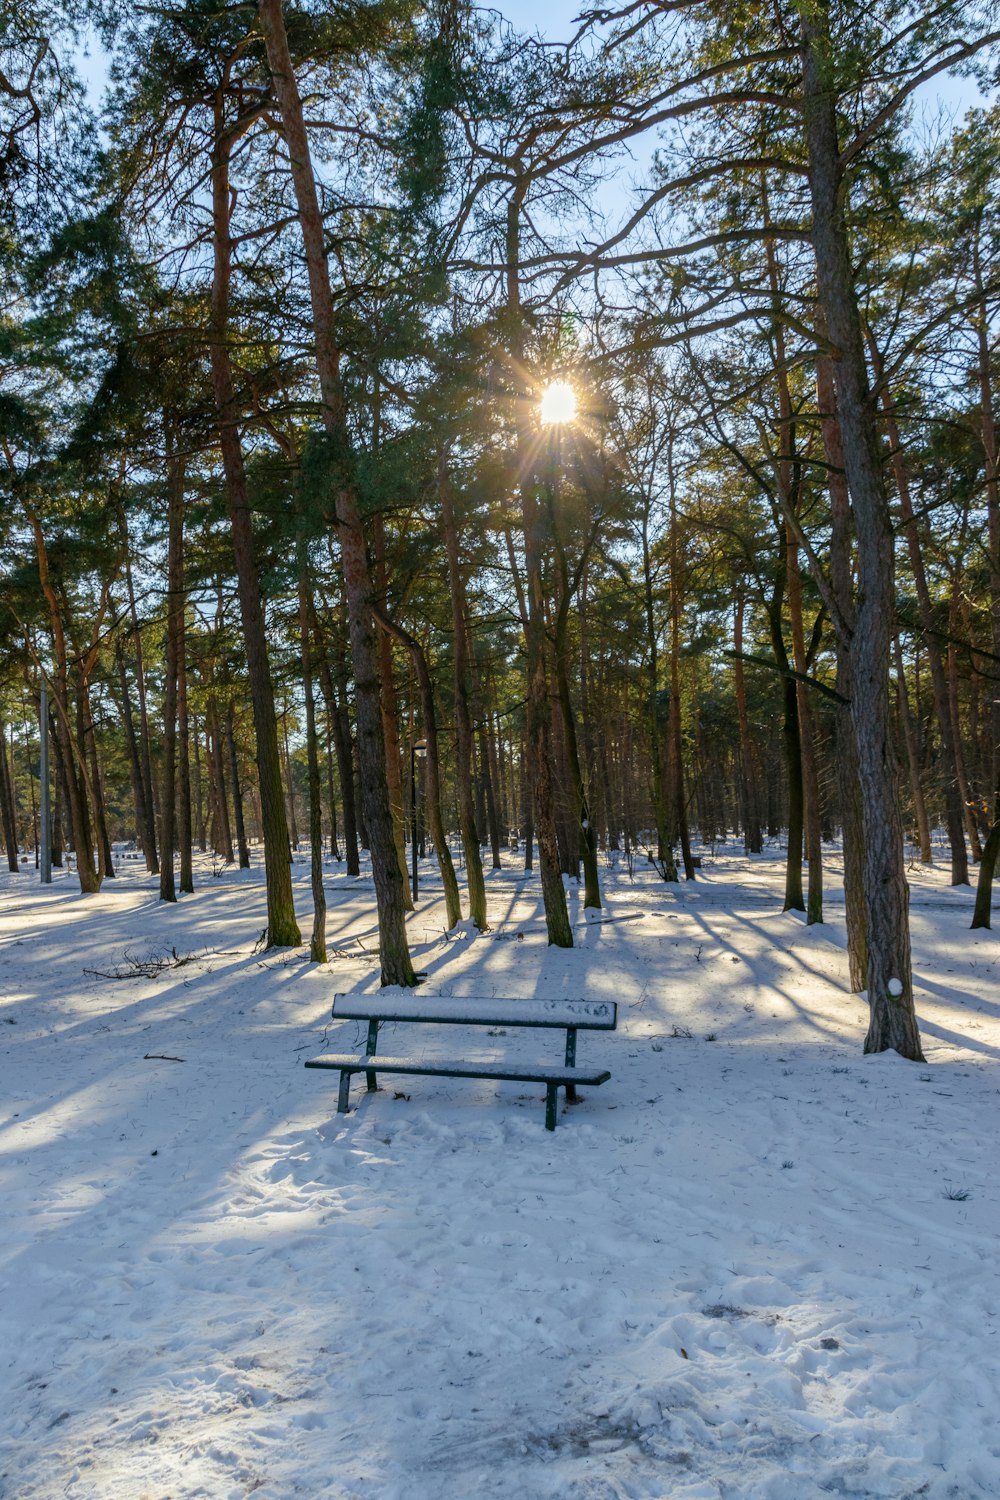 il sole splende tra gli alberi nella neve